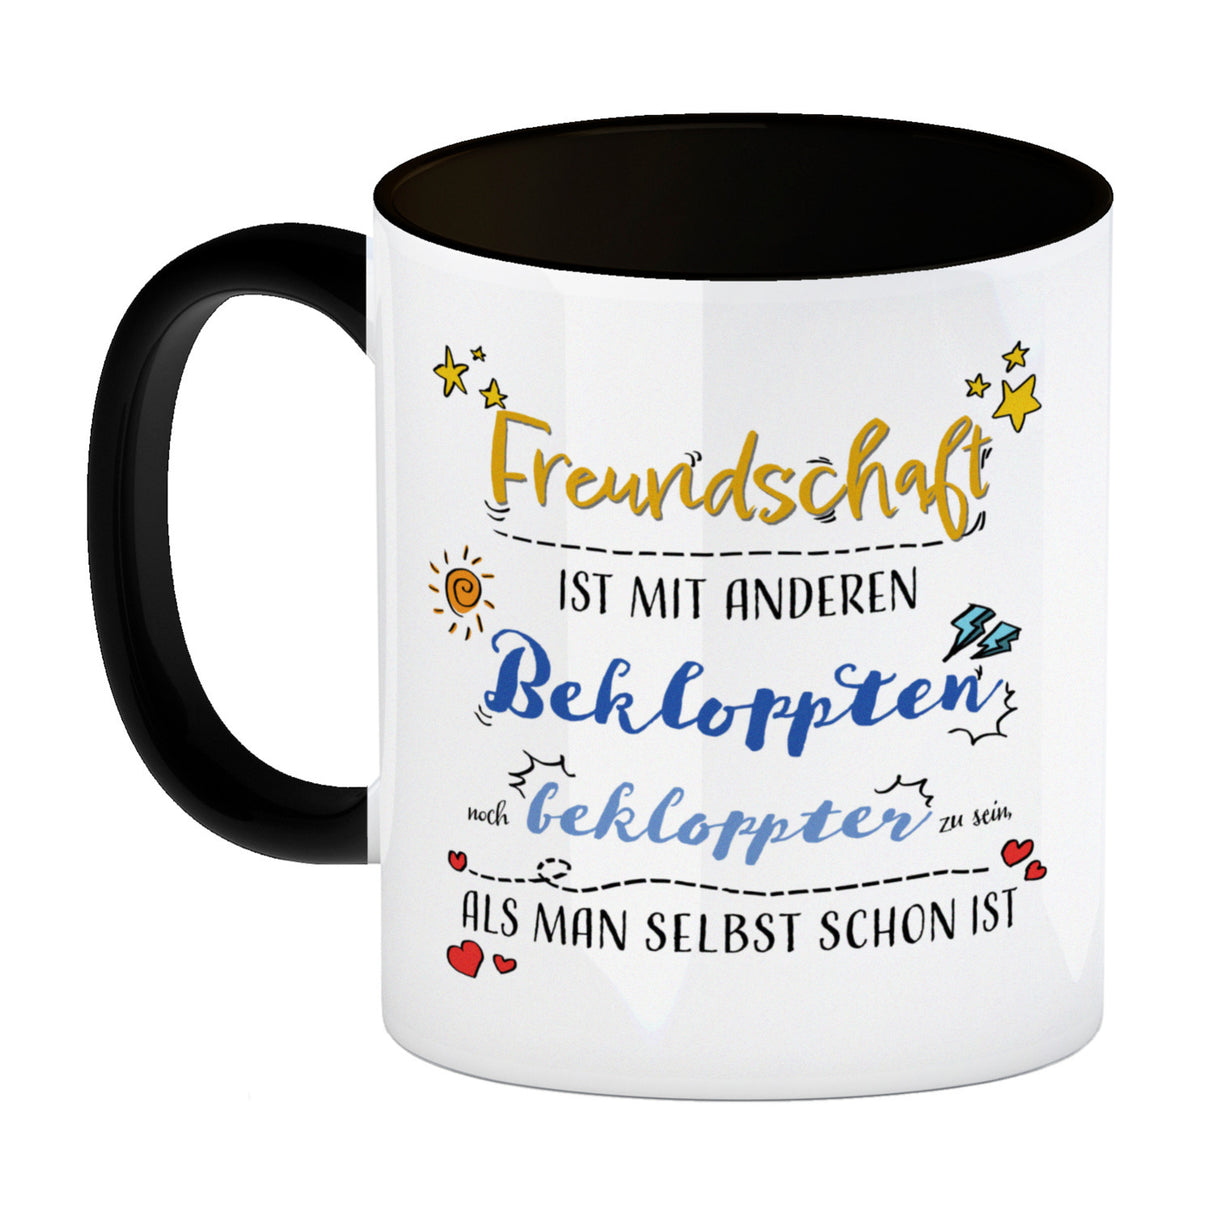 Kaffeebecher mit lustigem Spruch zu Freundschaft